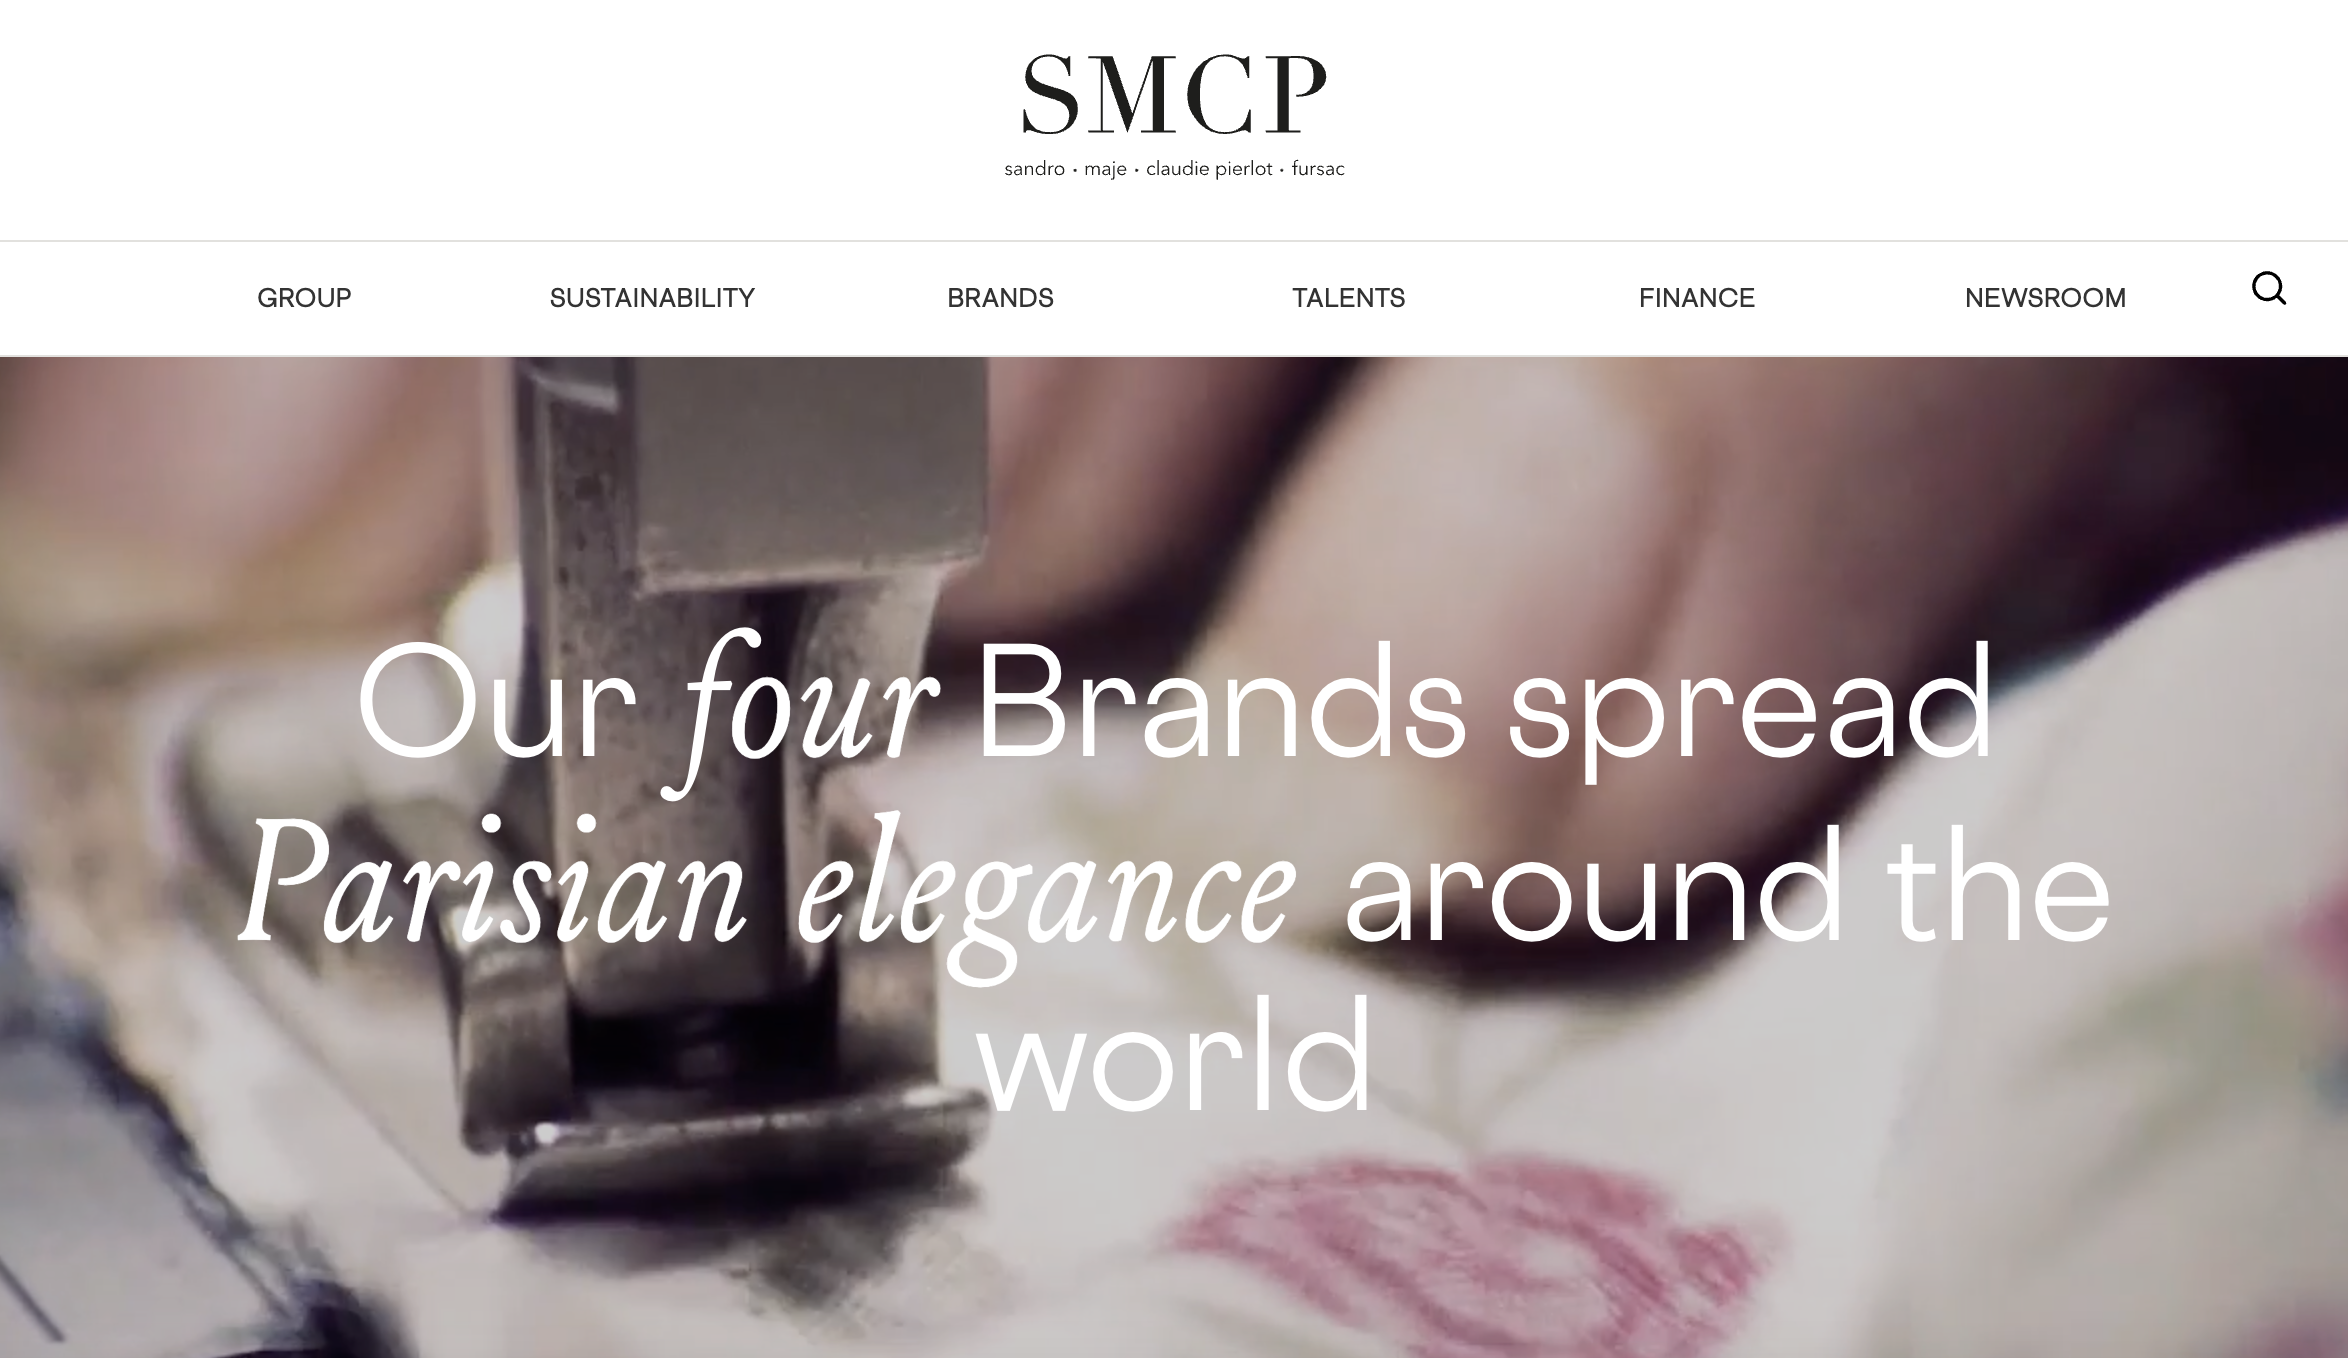 法国时装集团 SMCP 上半年销售额增长8%至6.1亿欧元，中国市场恢复增长